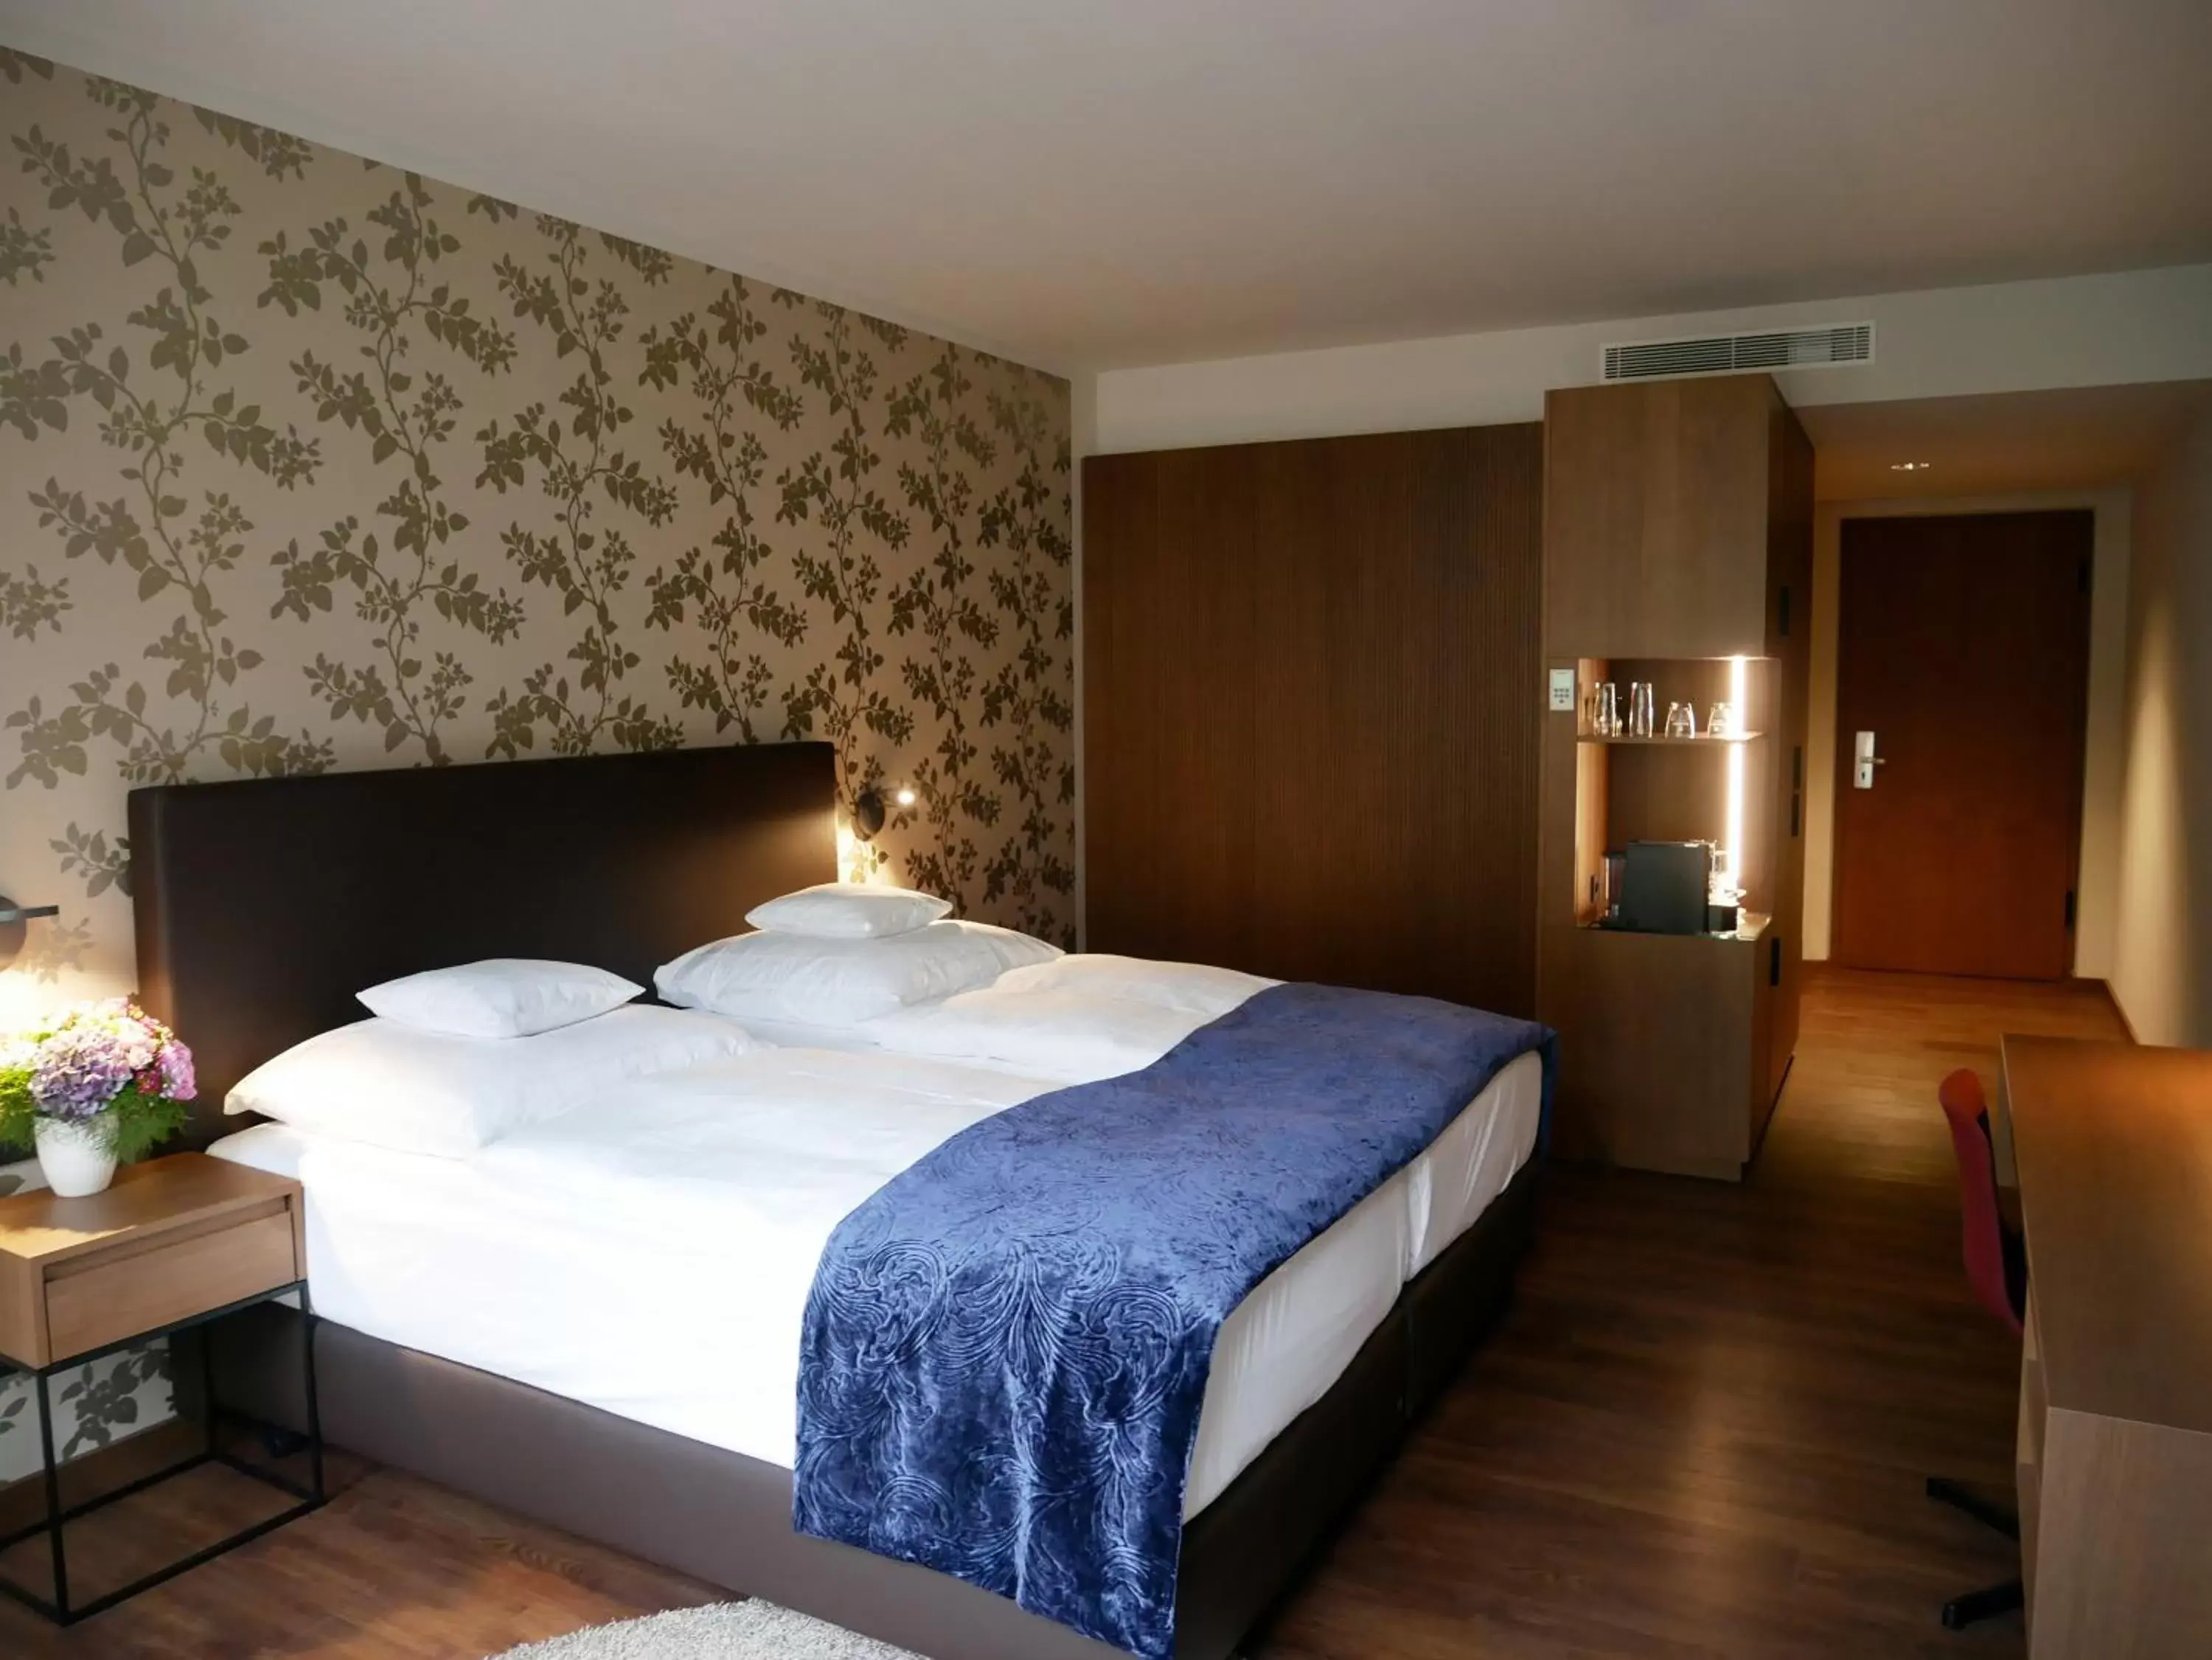 Bed in Best Western Premier Hotel Rebstock